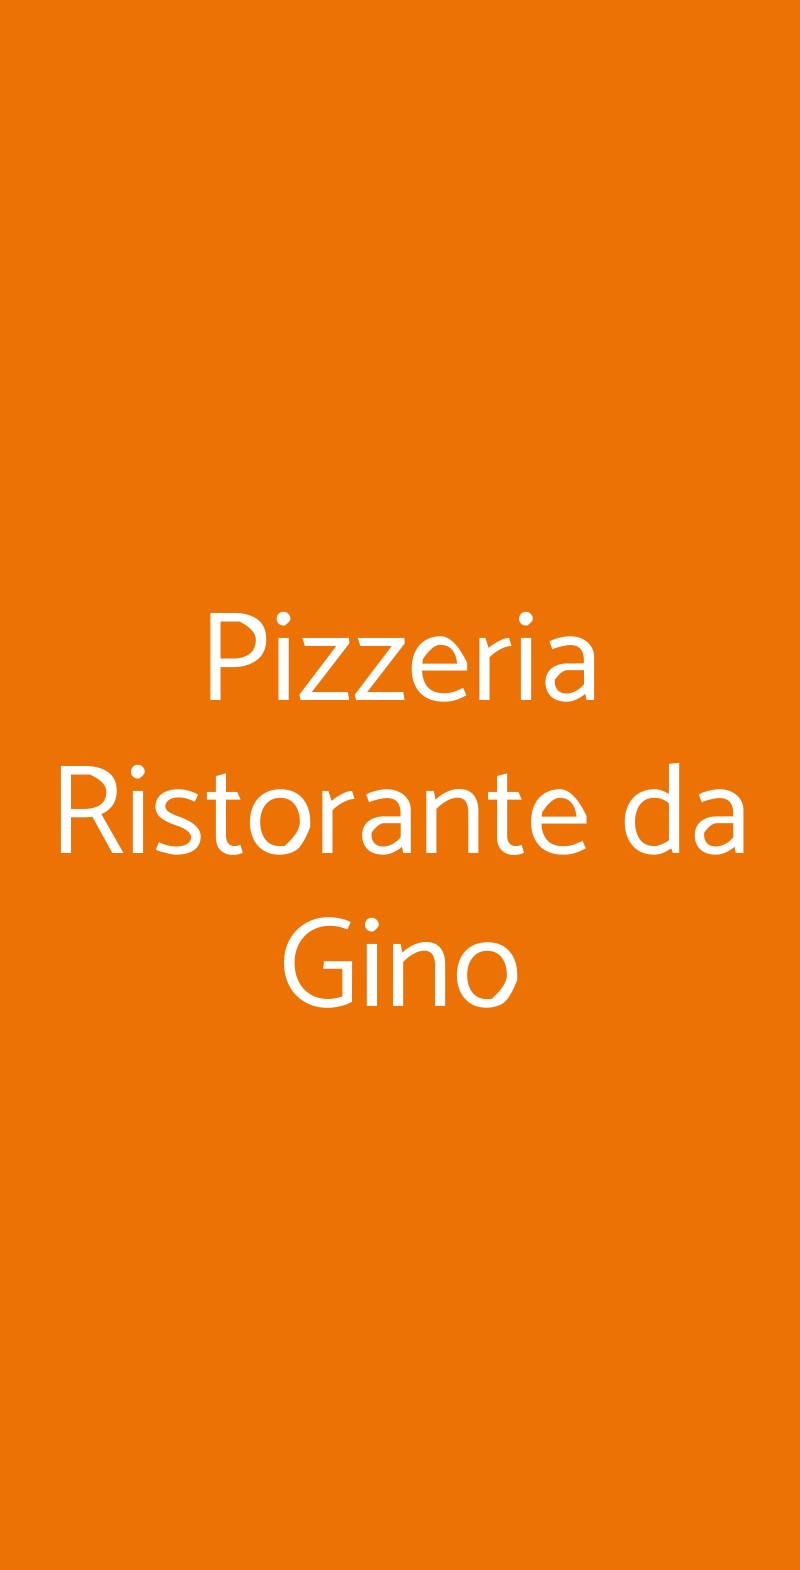 Pizzeria Ristorante da Gino Chignolo Po menù 1 pagina